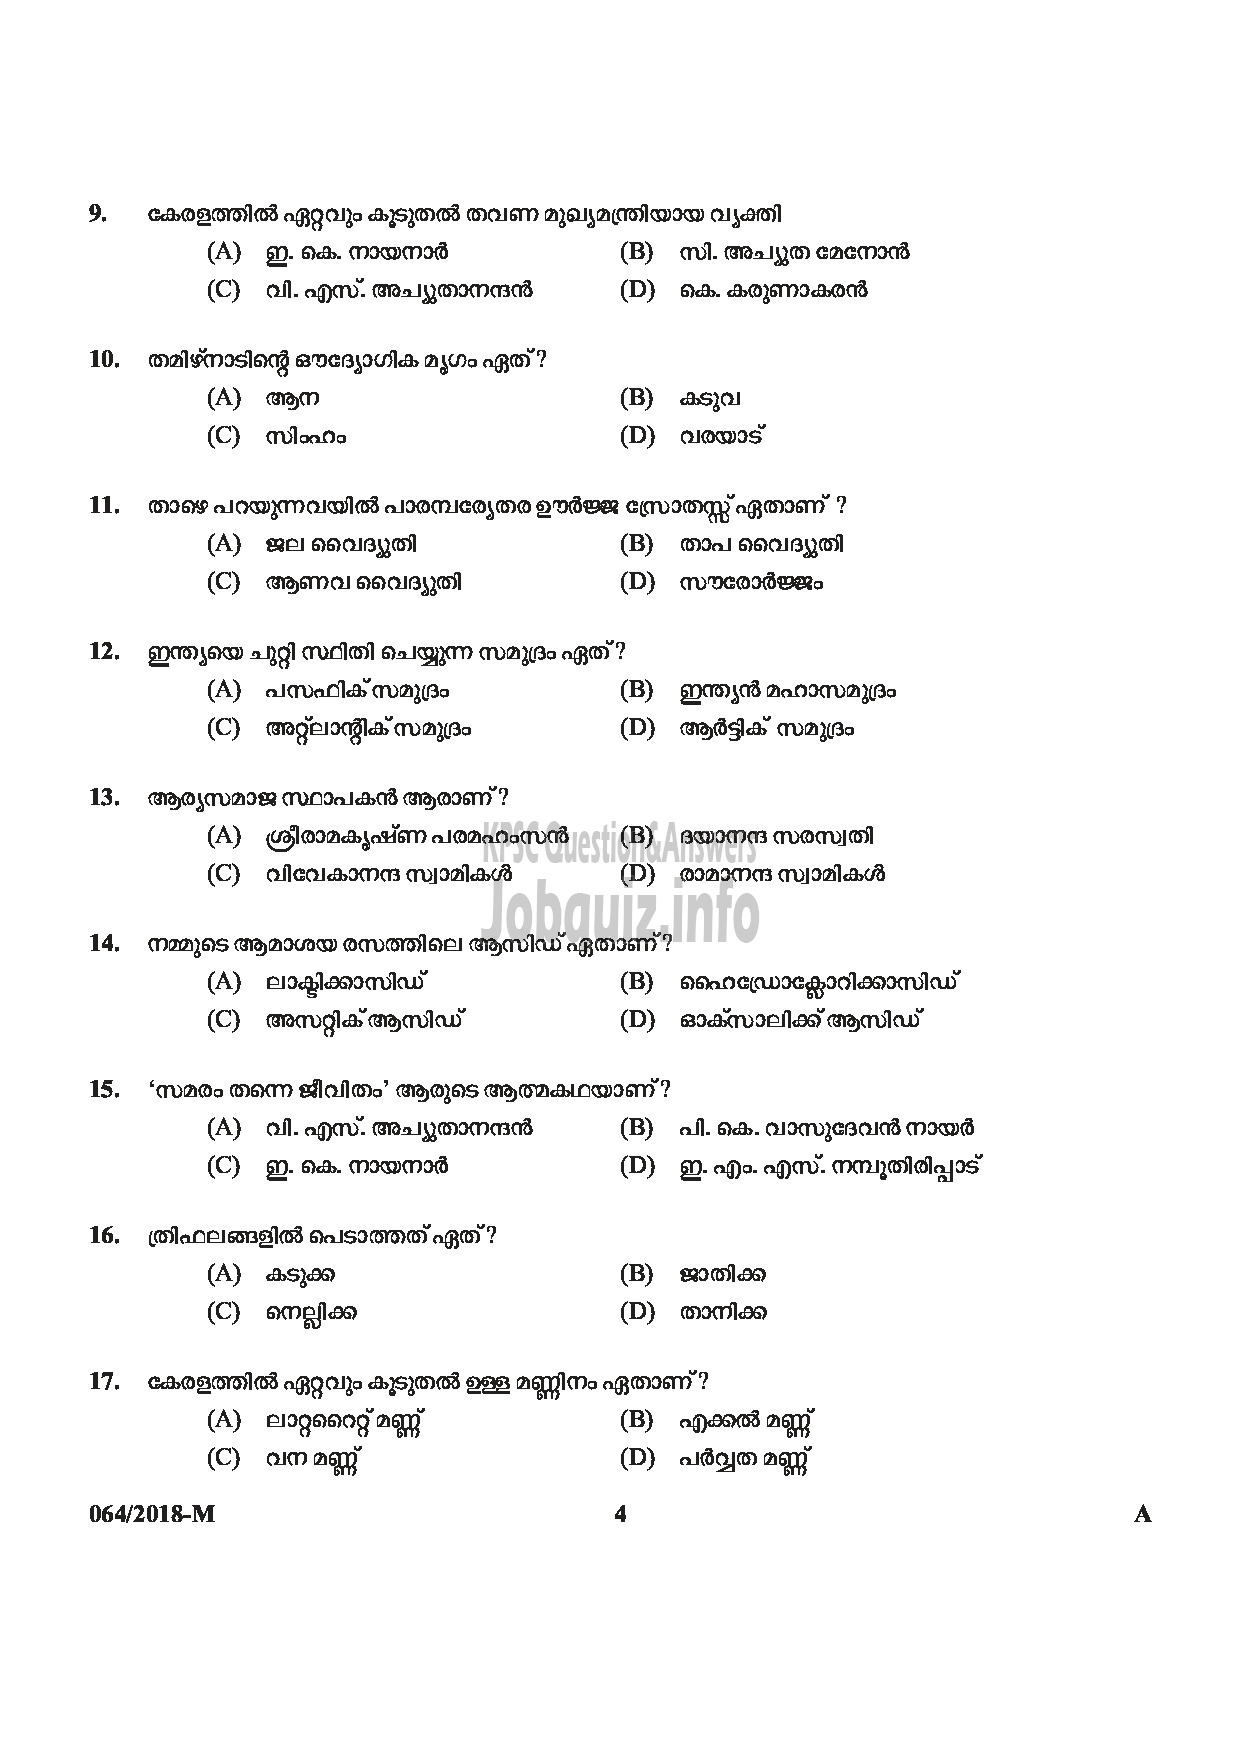 Kerala PSC Question Paper - LAST GRADE SERVANTS EXSERVICEMAN NCC SAINIK WELFARE-4